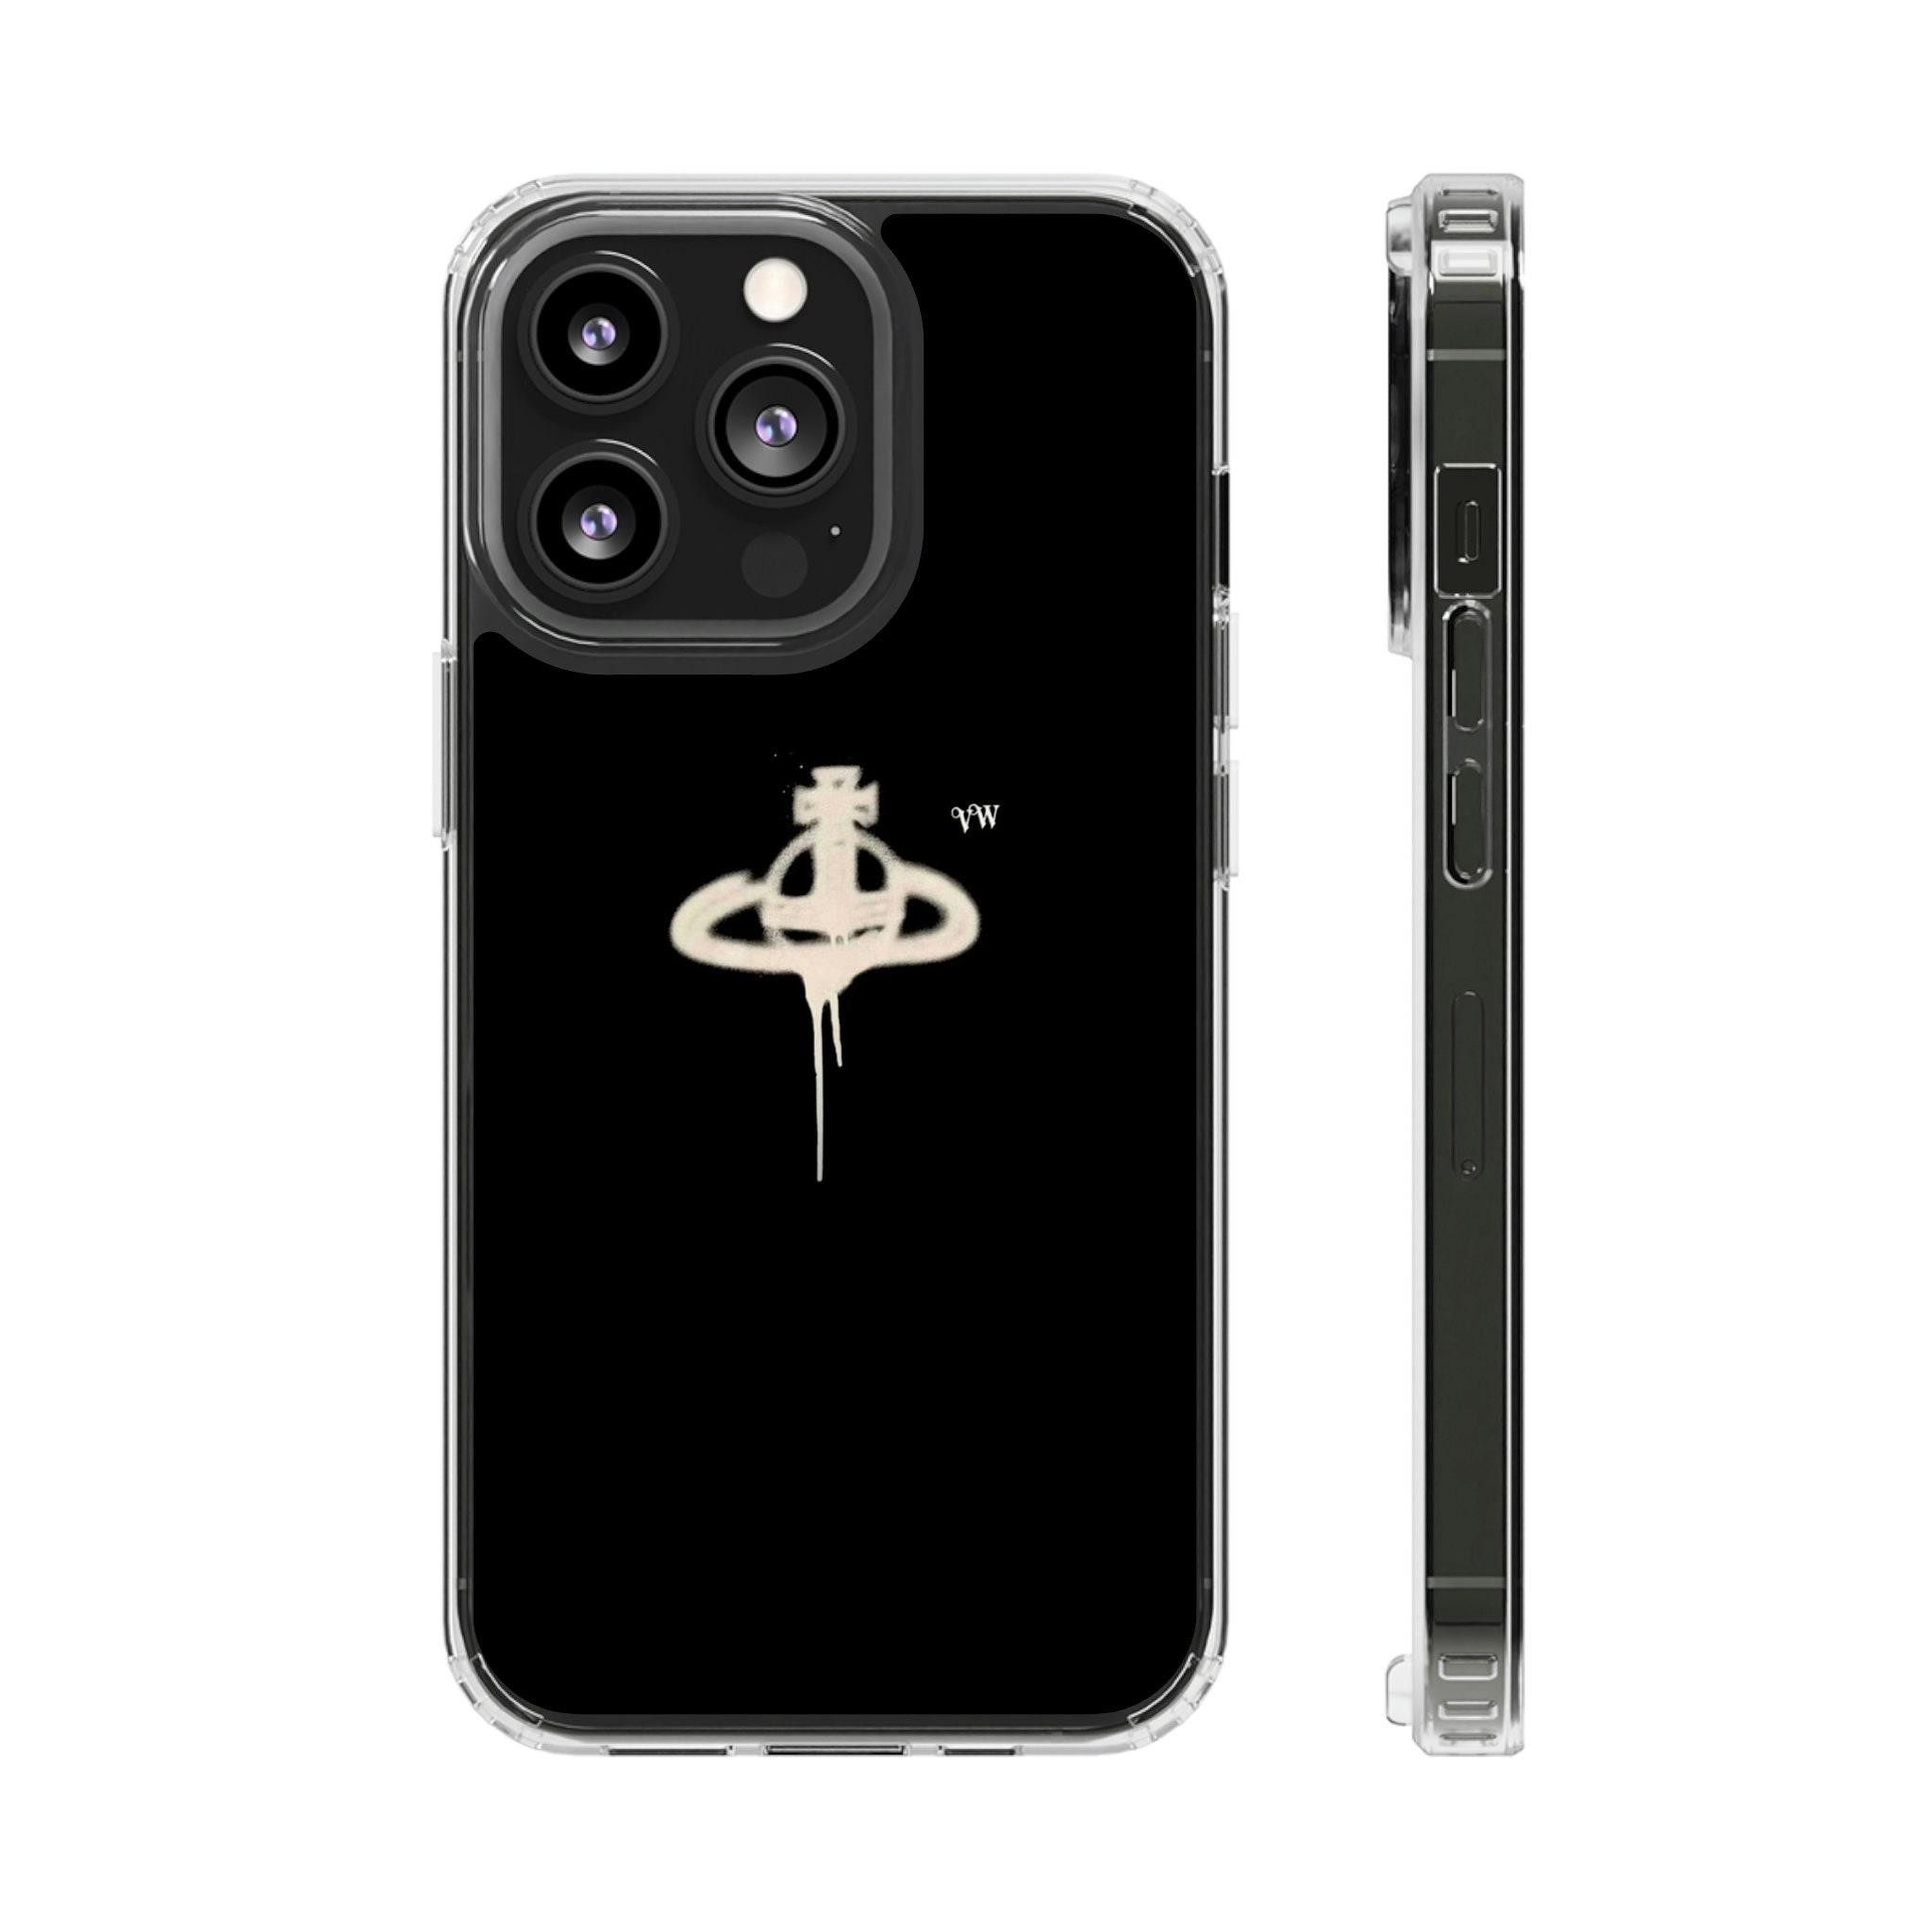 LV Bape iPhone 14 Plus Case